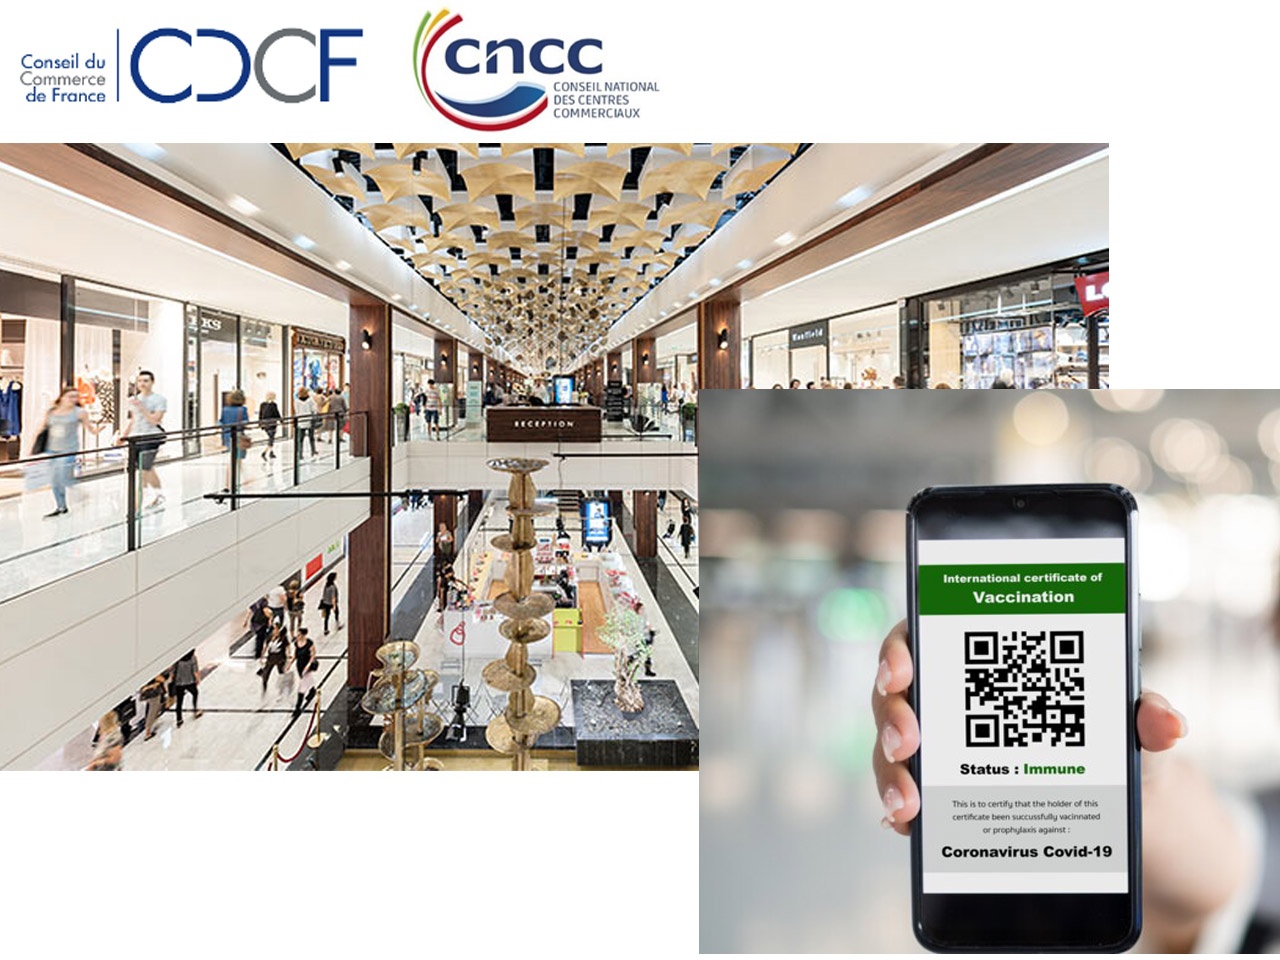 Le CNCC s’associe au CDCF et demande le retrait de l’obligation de passe sanitaire conditionnant l’accès aux centres commerciaux